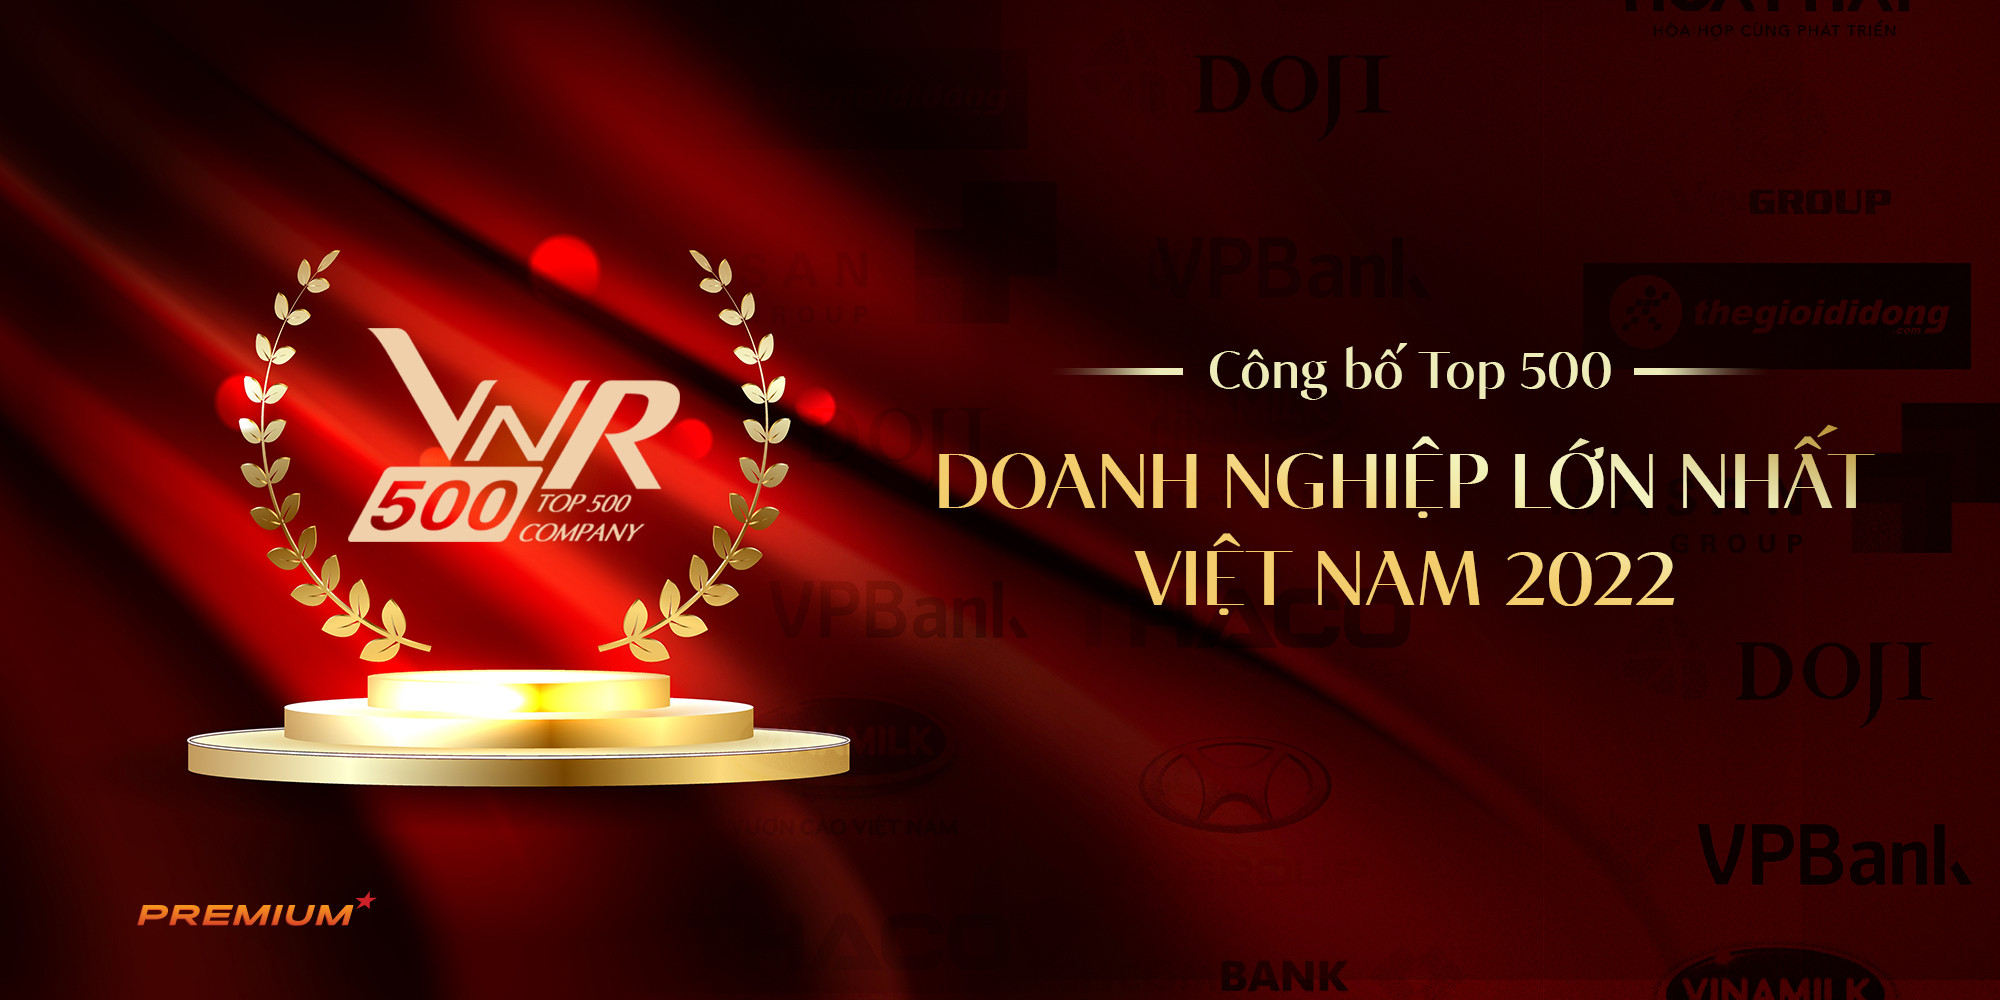 Top 500 doanh nghiệp lớn nhất Việt Nam 2022 (VNR500)